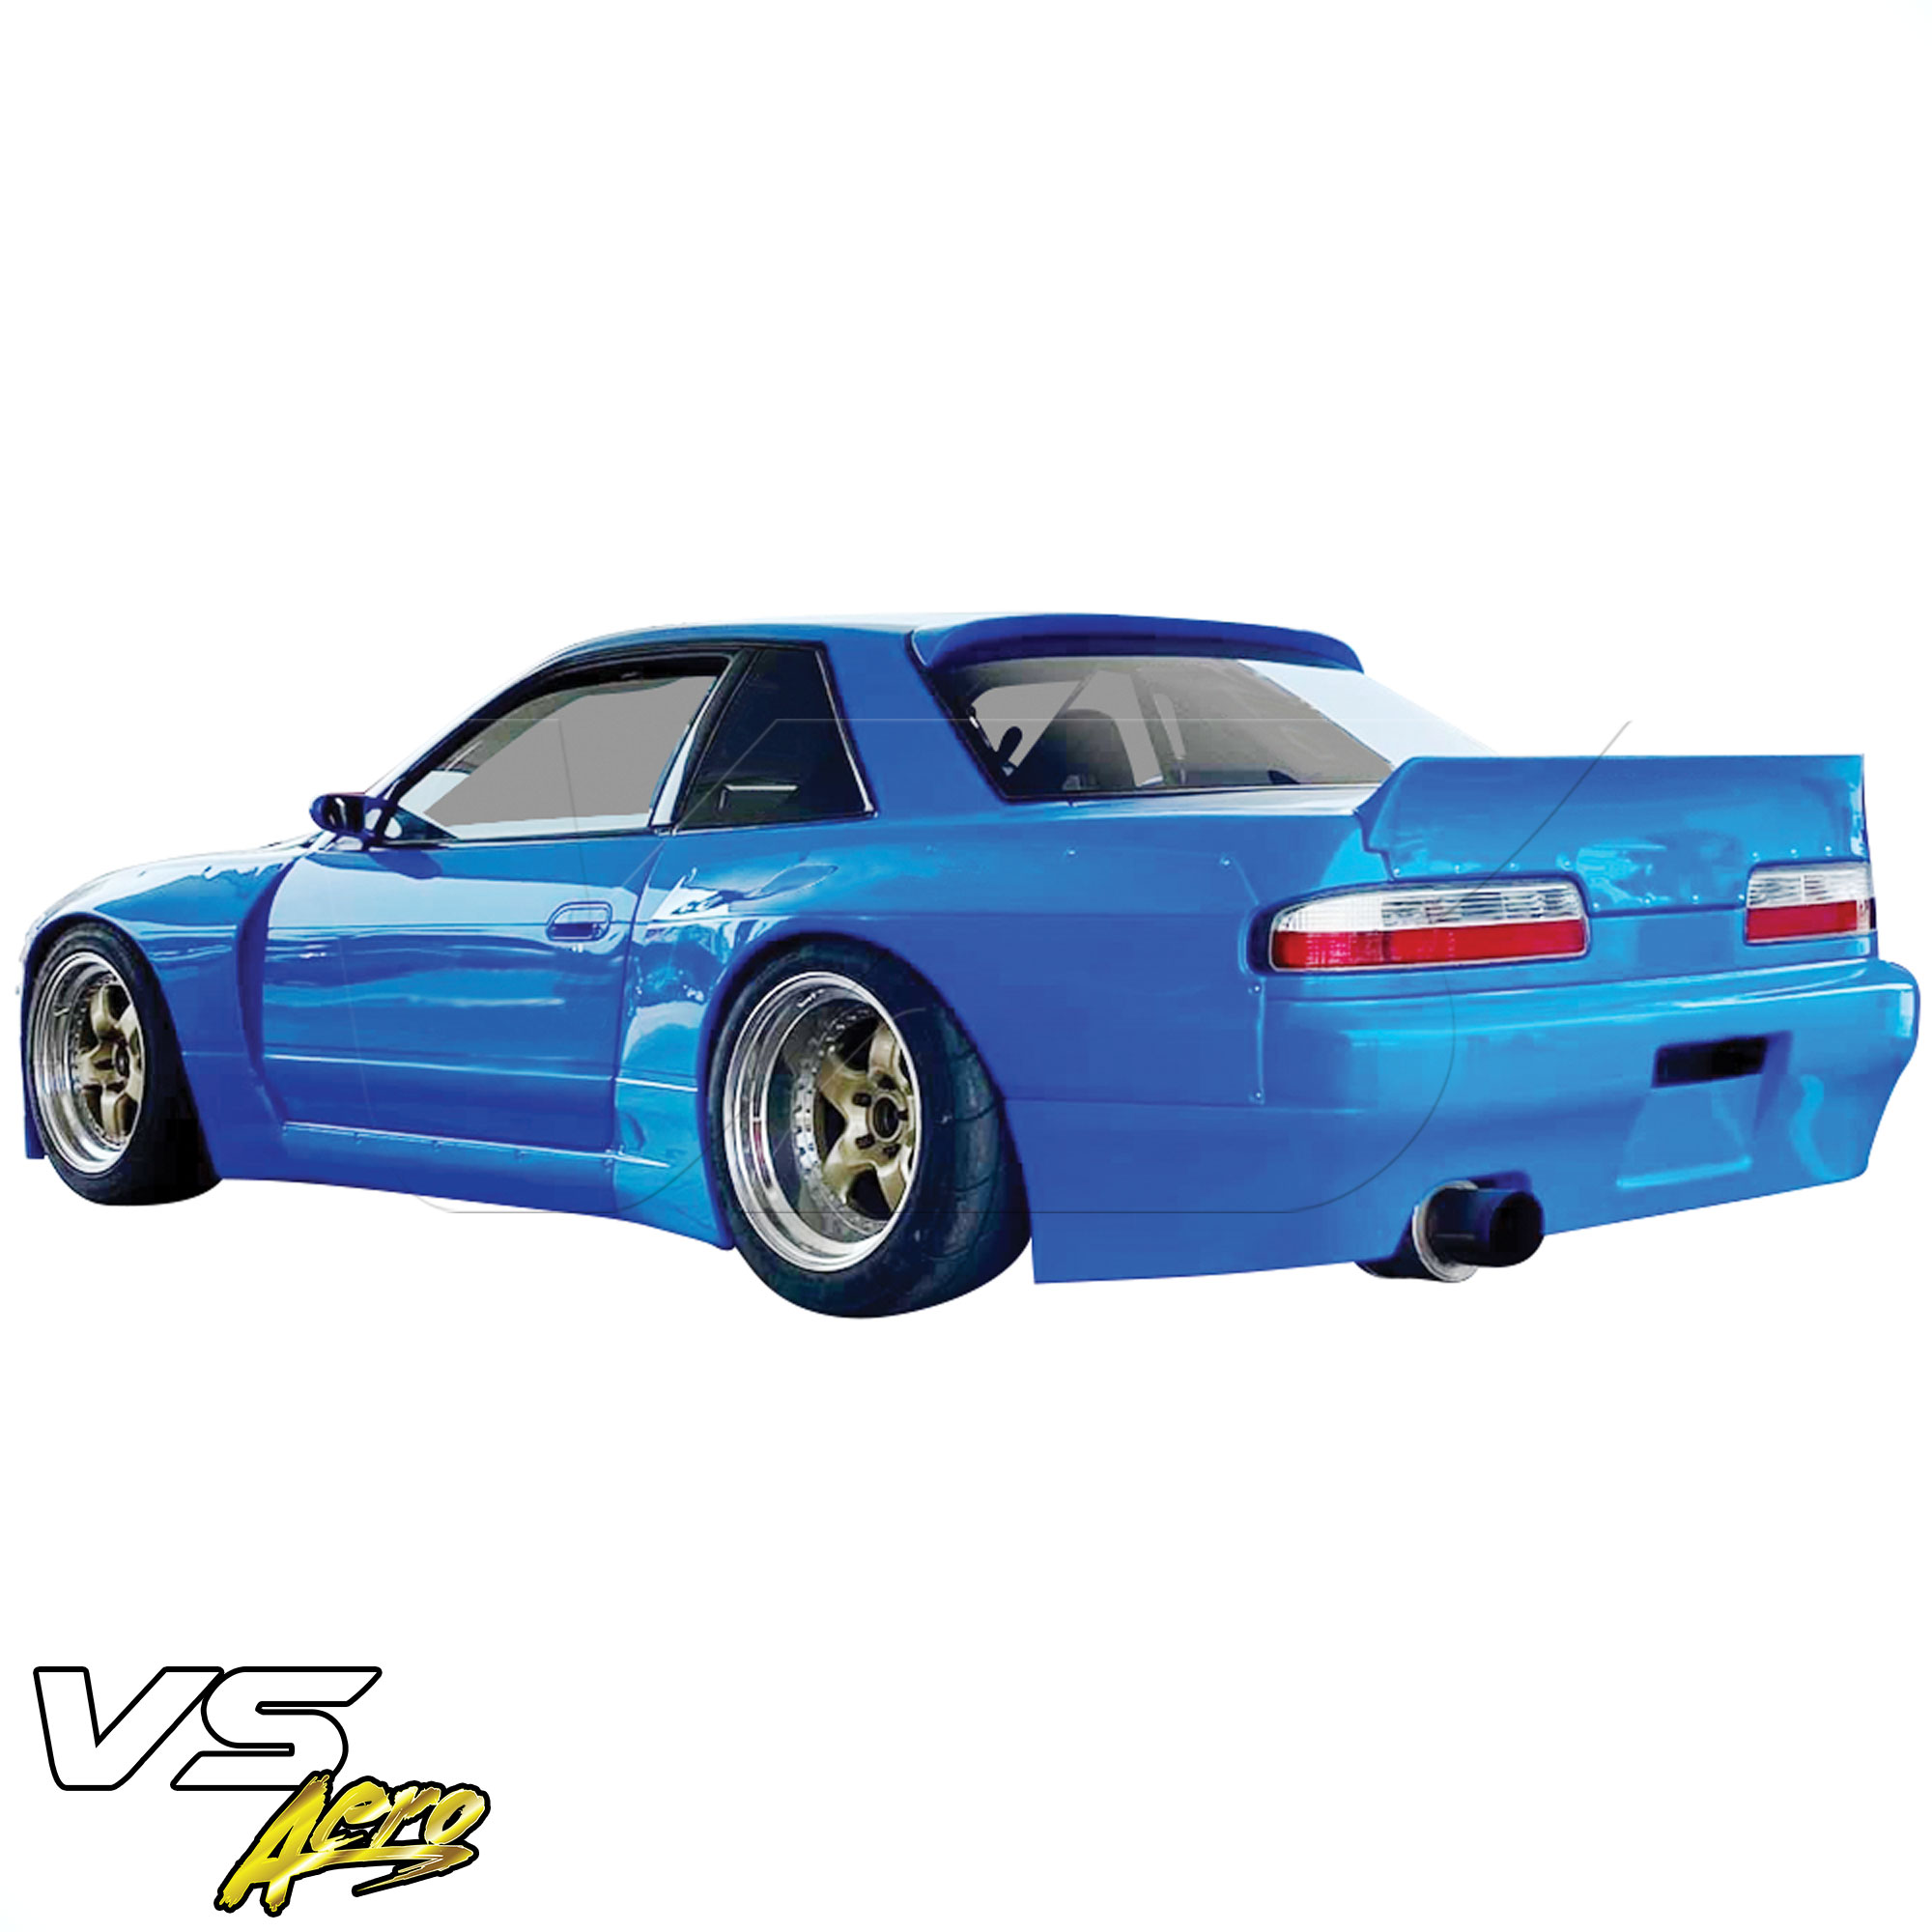 VSaero FRP TKYO v3 Wide Body Rear Bumper > Nissan Silvia S13 1989-1994 > 2dr Coupe - Image 6